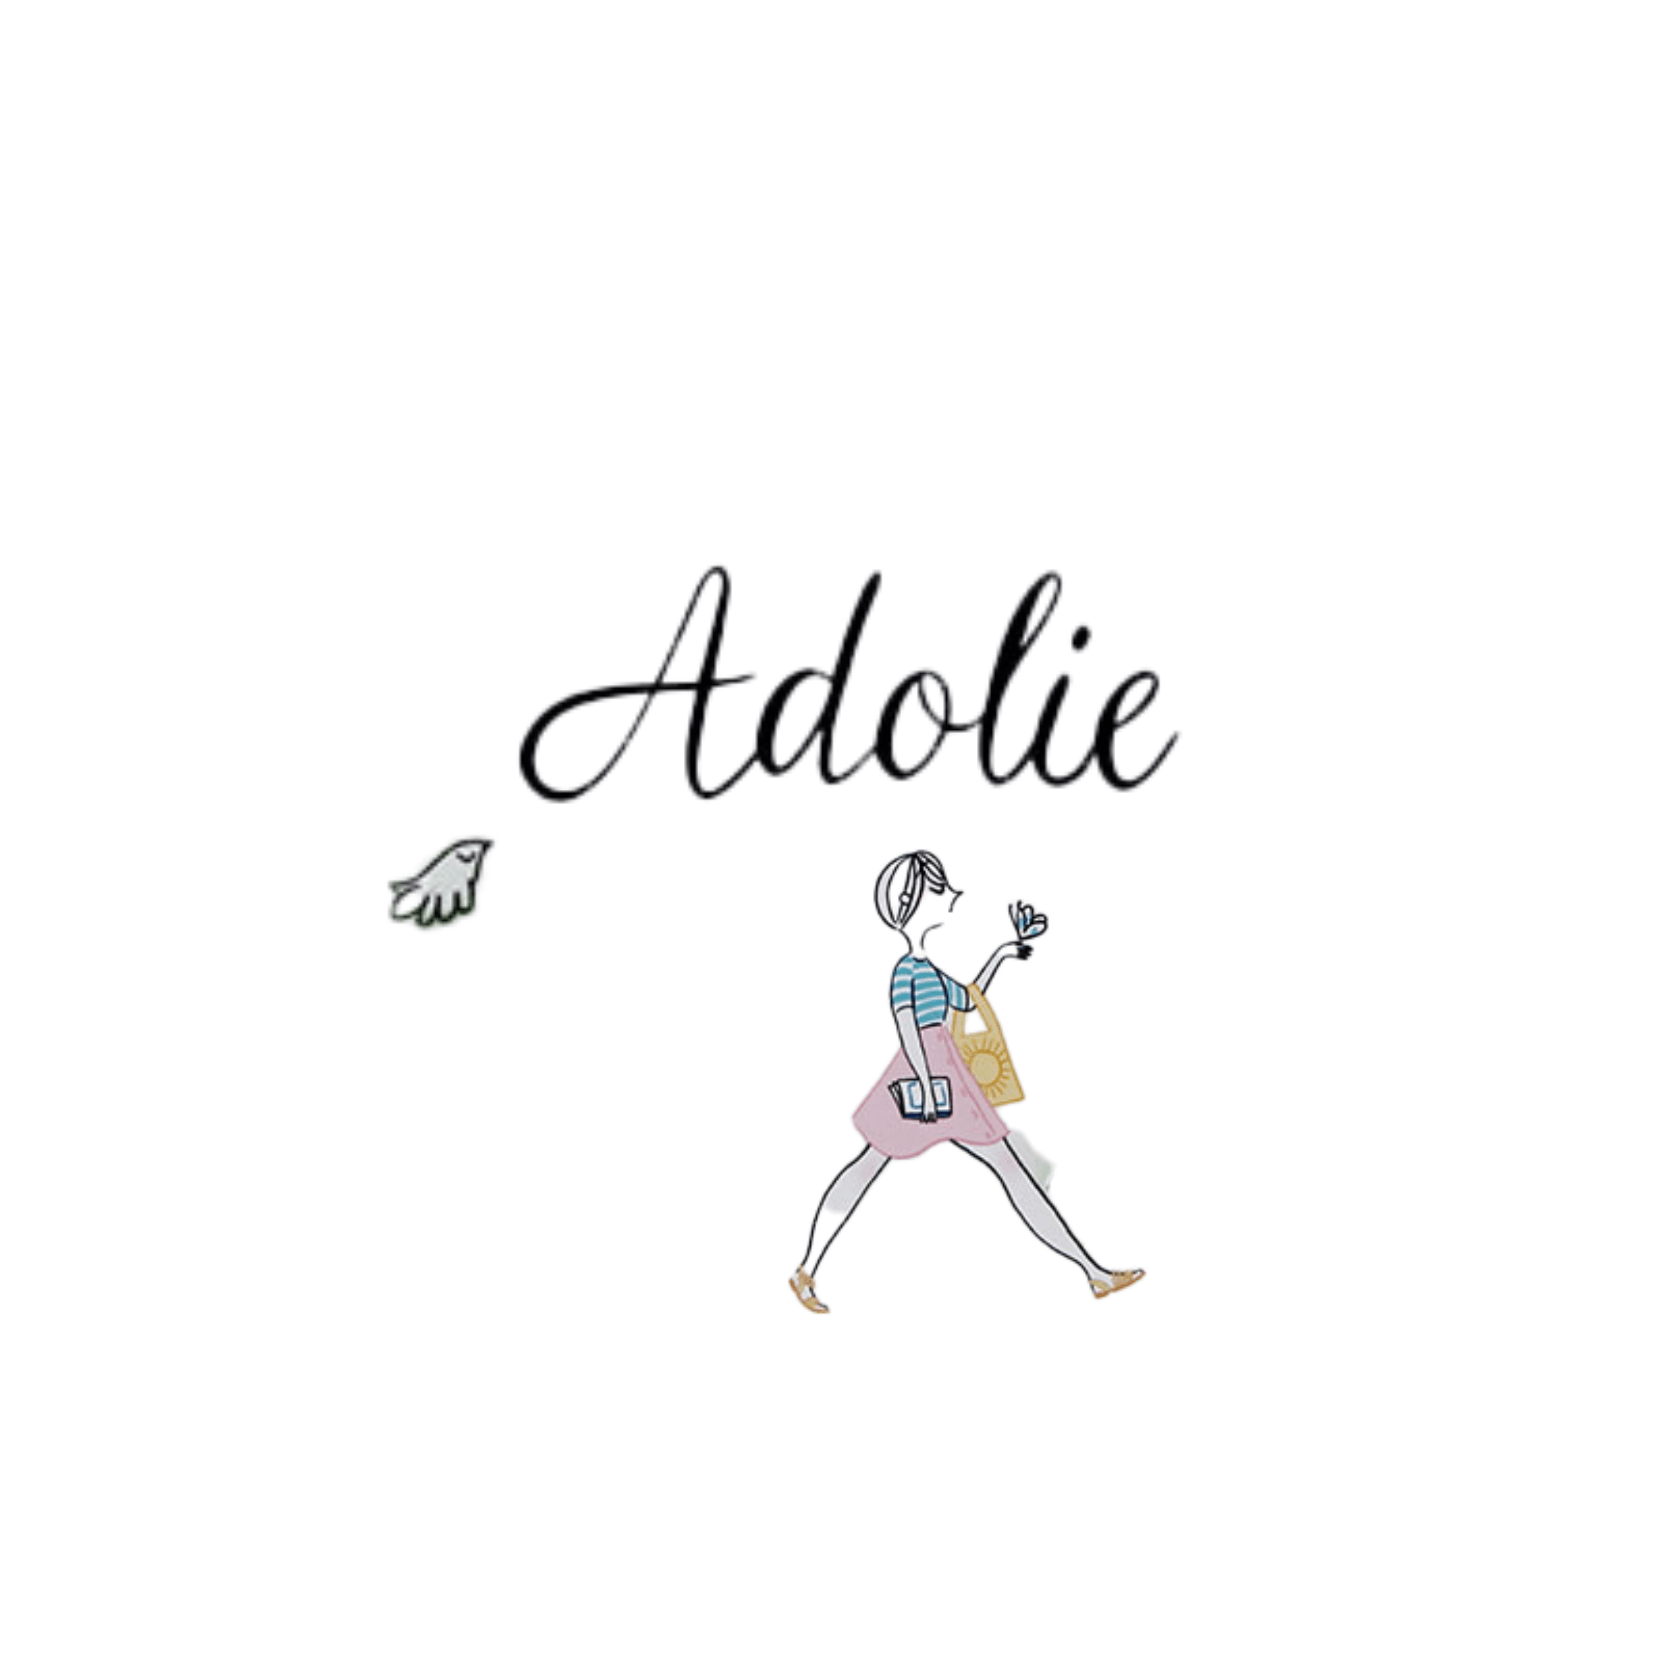 Logo Adolie